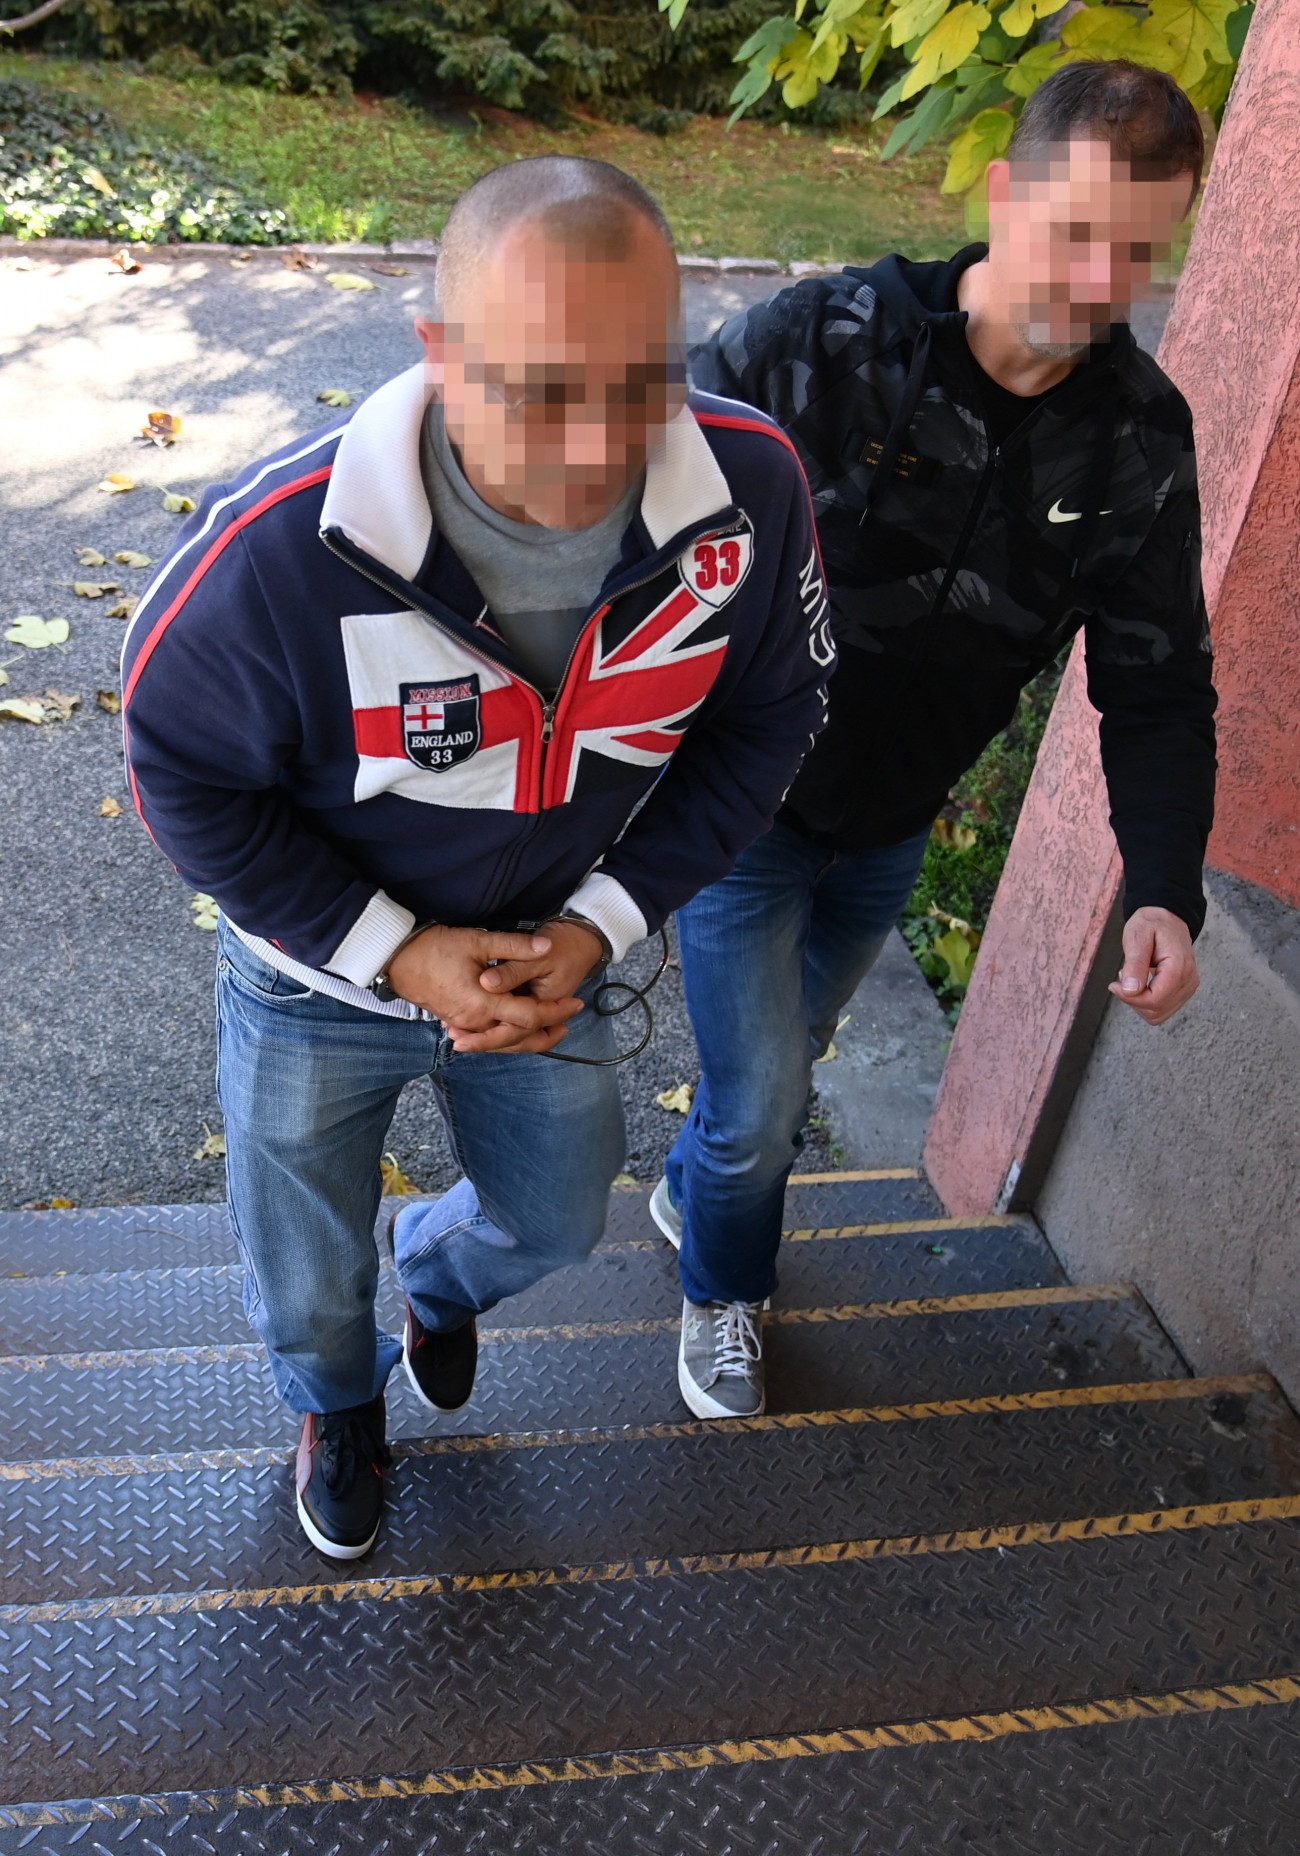 Pécs, 2022. október 21.
Rendőrök előállítanak egy férfit Pécsen 2022. október 18-án. A férfi és társai, az úgynevezett kötözős banda tagjai ellen rablás bűntettének megalapozott gyanúja miatt folytatnak nyomozást. A gyanú szerint a 2010-ben kezdődött rablássorozatban az elkövetők főként gyorskötözővel gúzsba kötött áldozataikat fegyverrel, késsel fenyegetve kényszerítették ékszereik, pénzük átadására.
MTI/Mihádák Zoltán